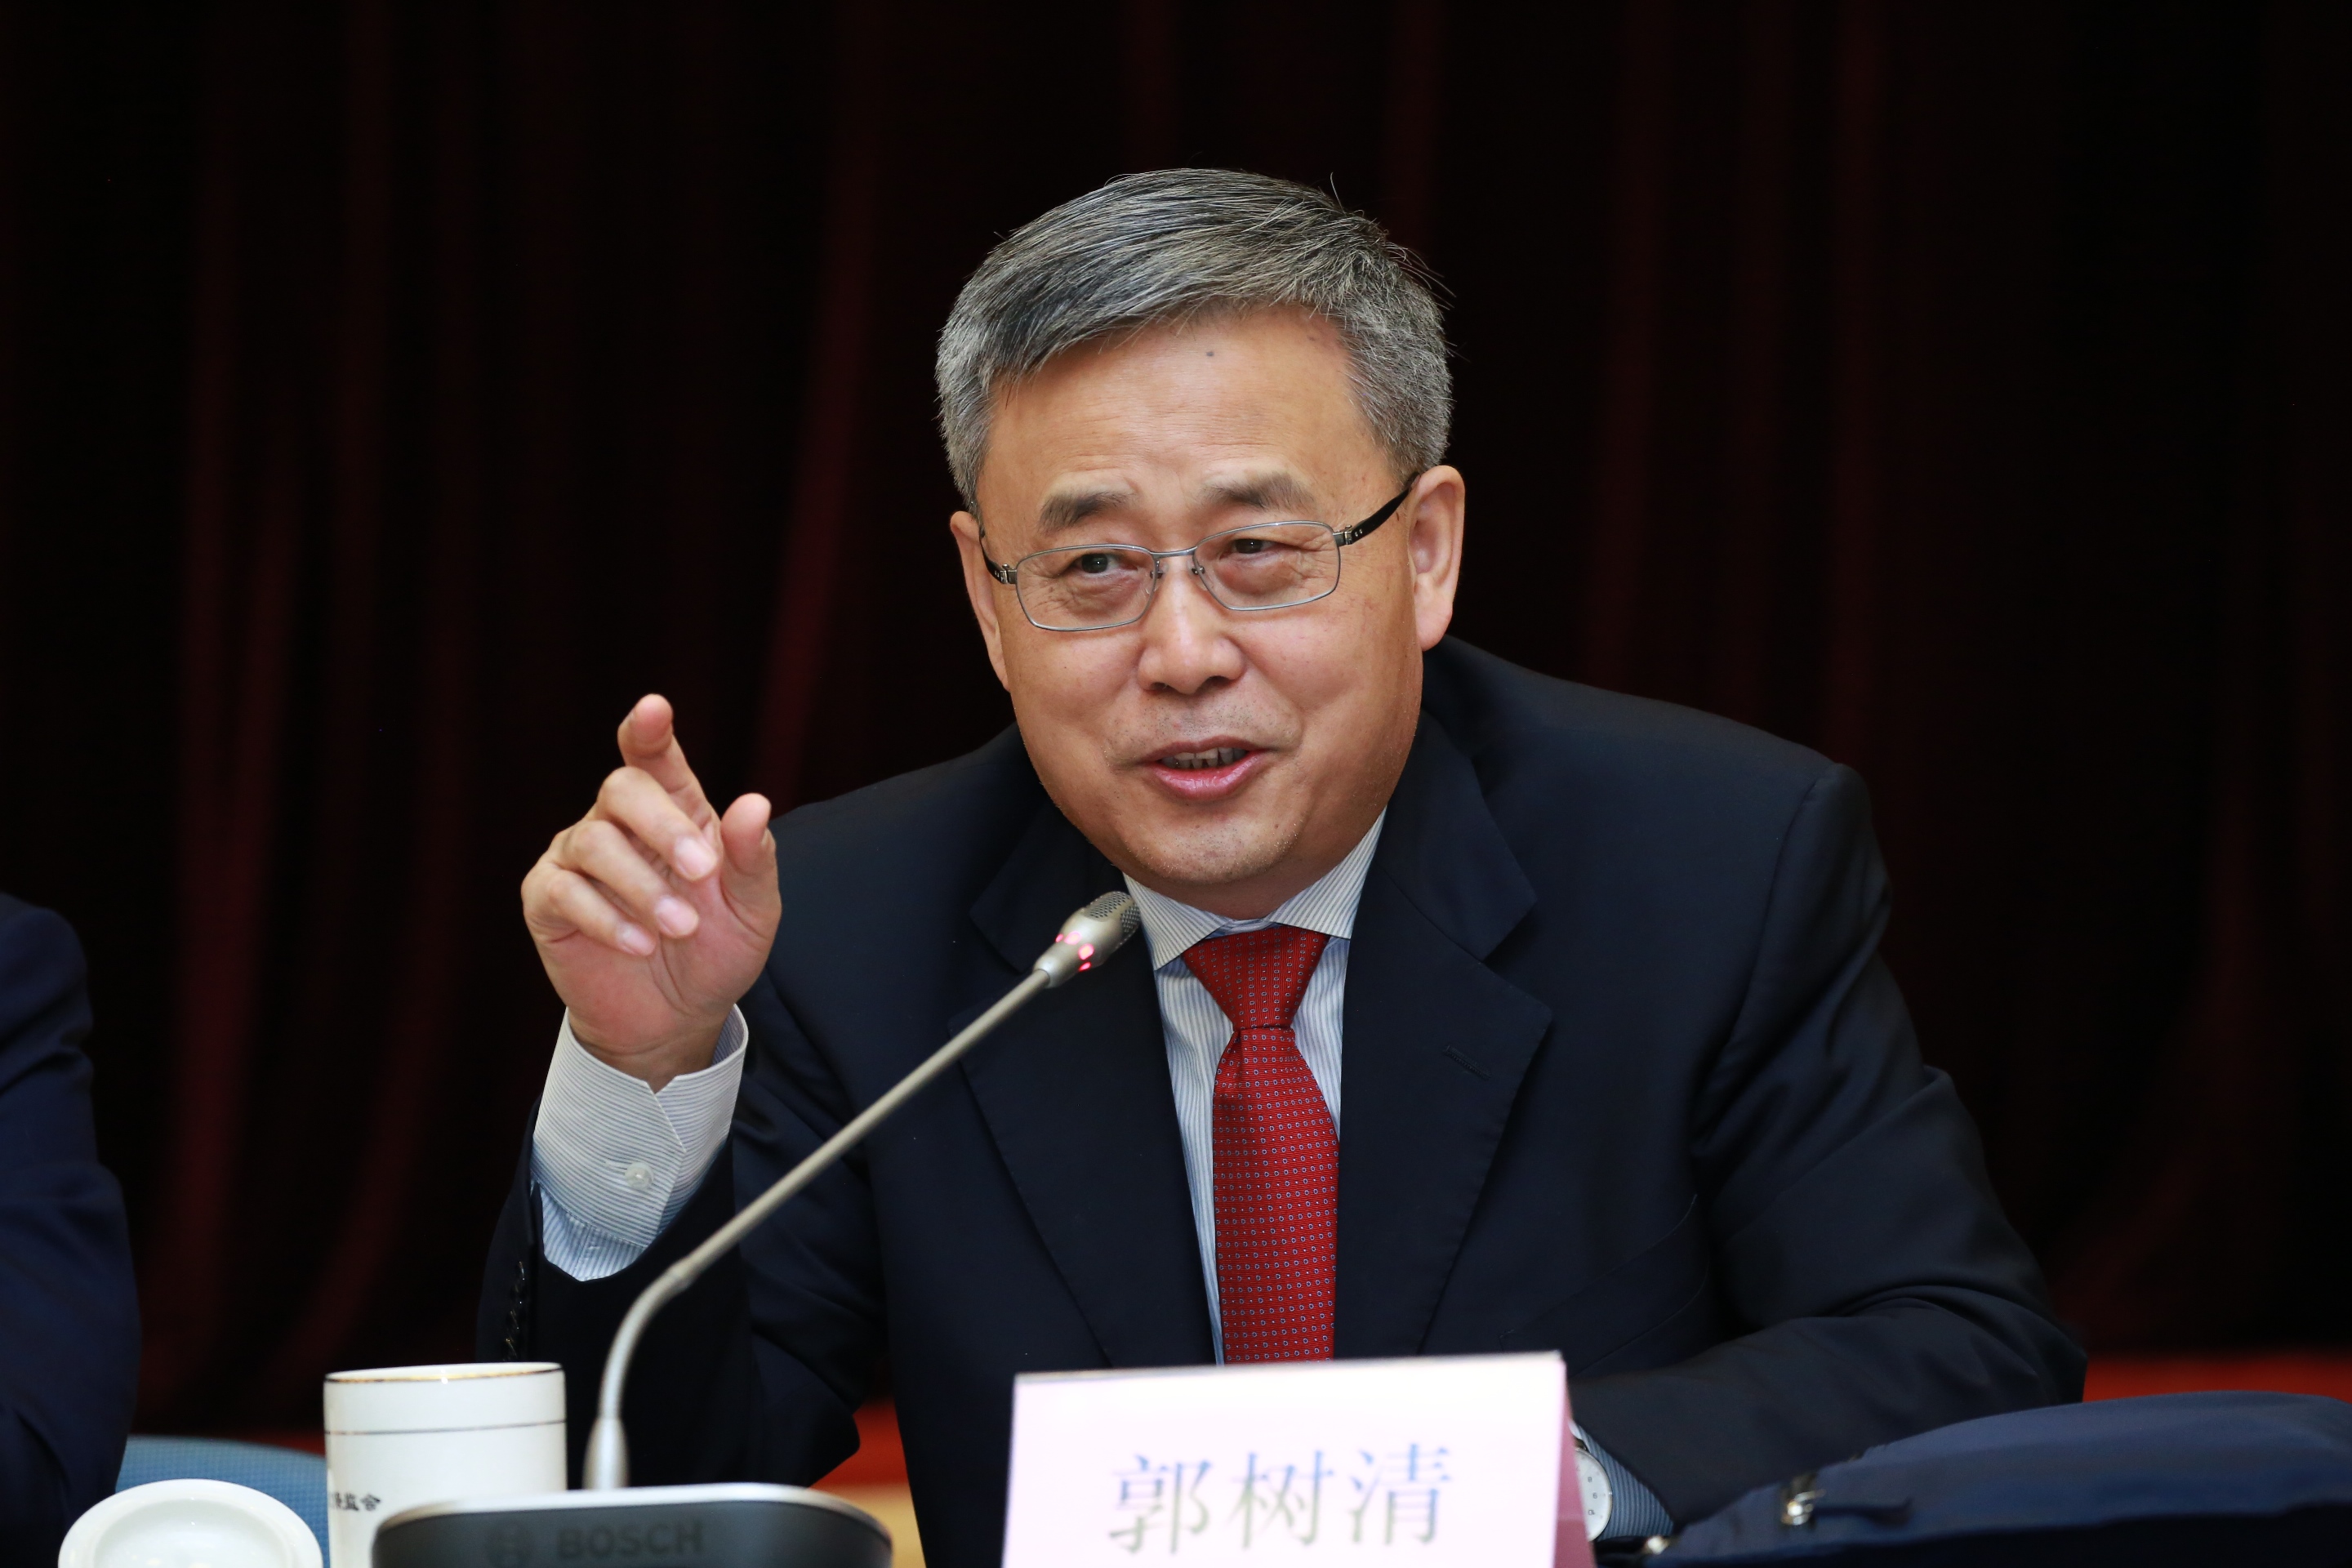 中國銀保監會主席郭樹清出席座談會與與會者交流。